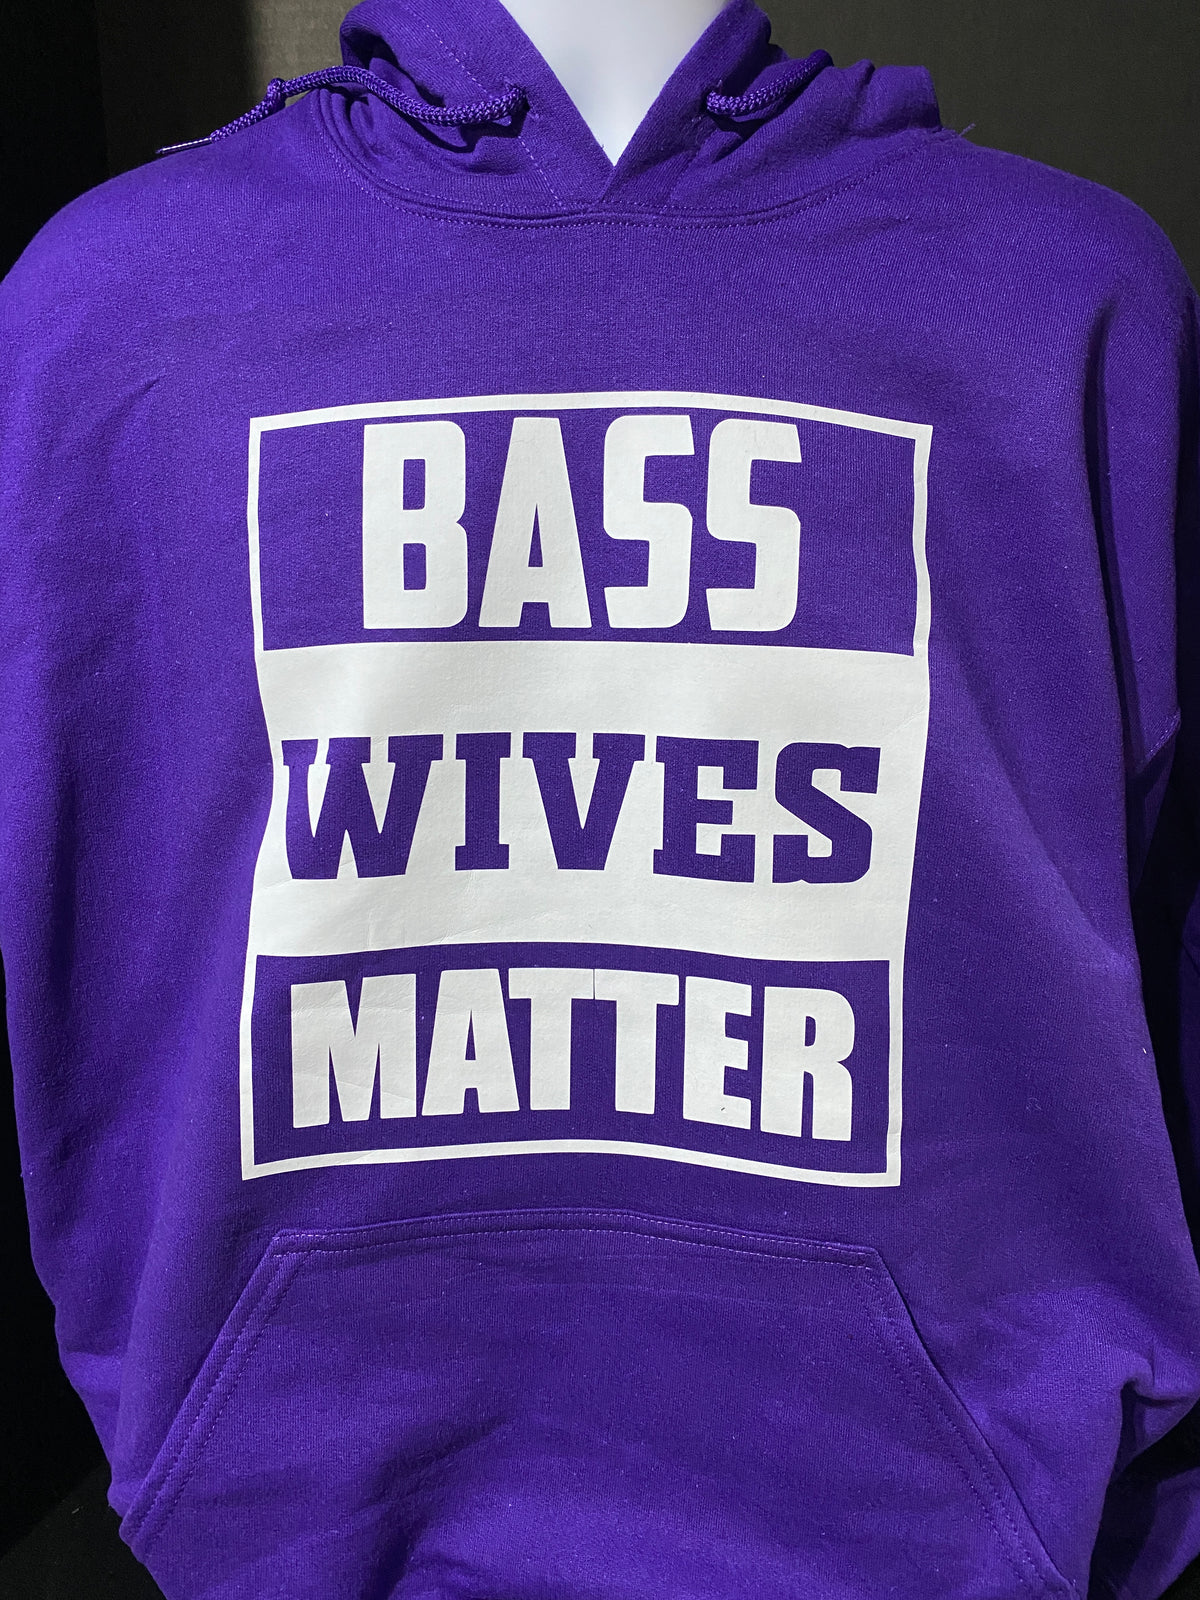 Bass Wives Matter Basshead Sweatshirt